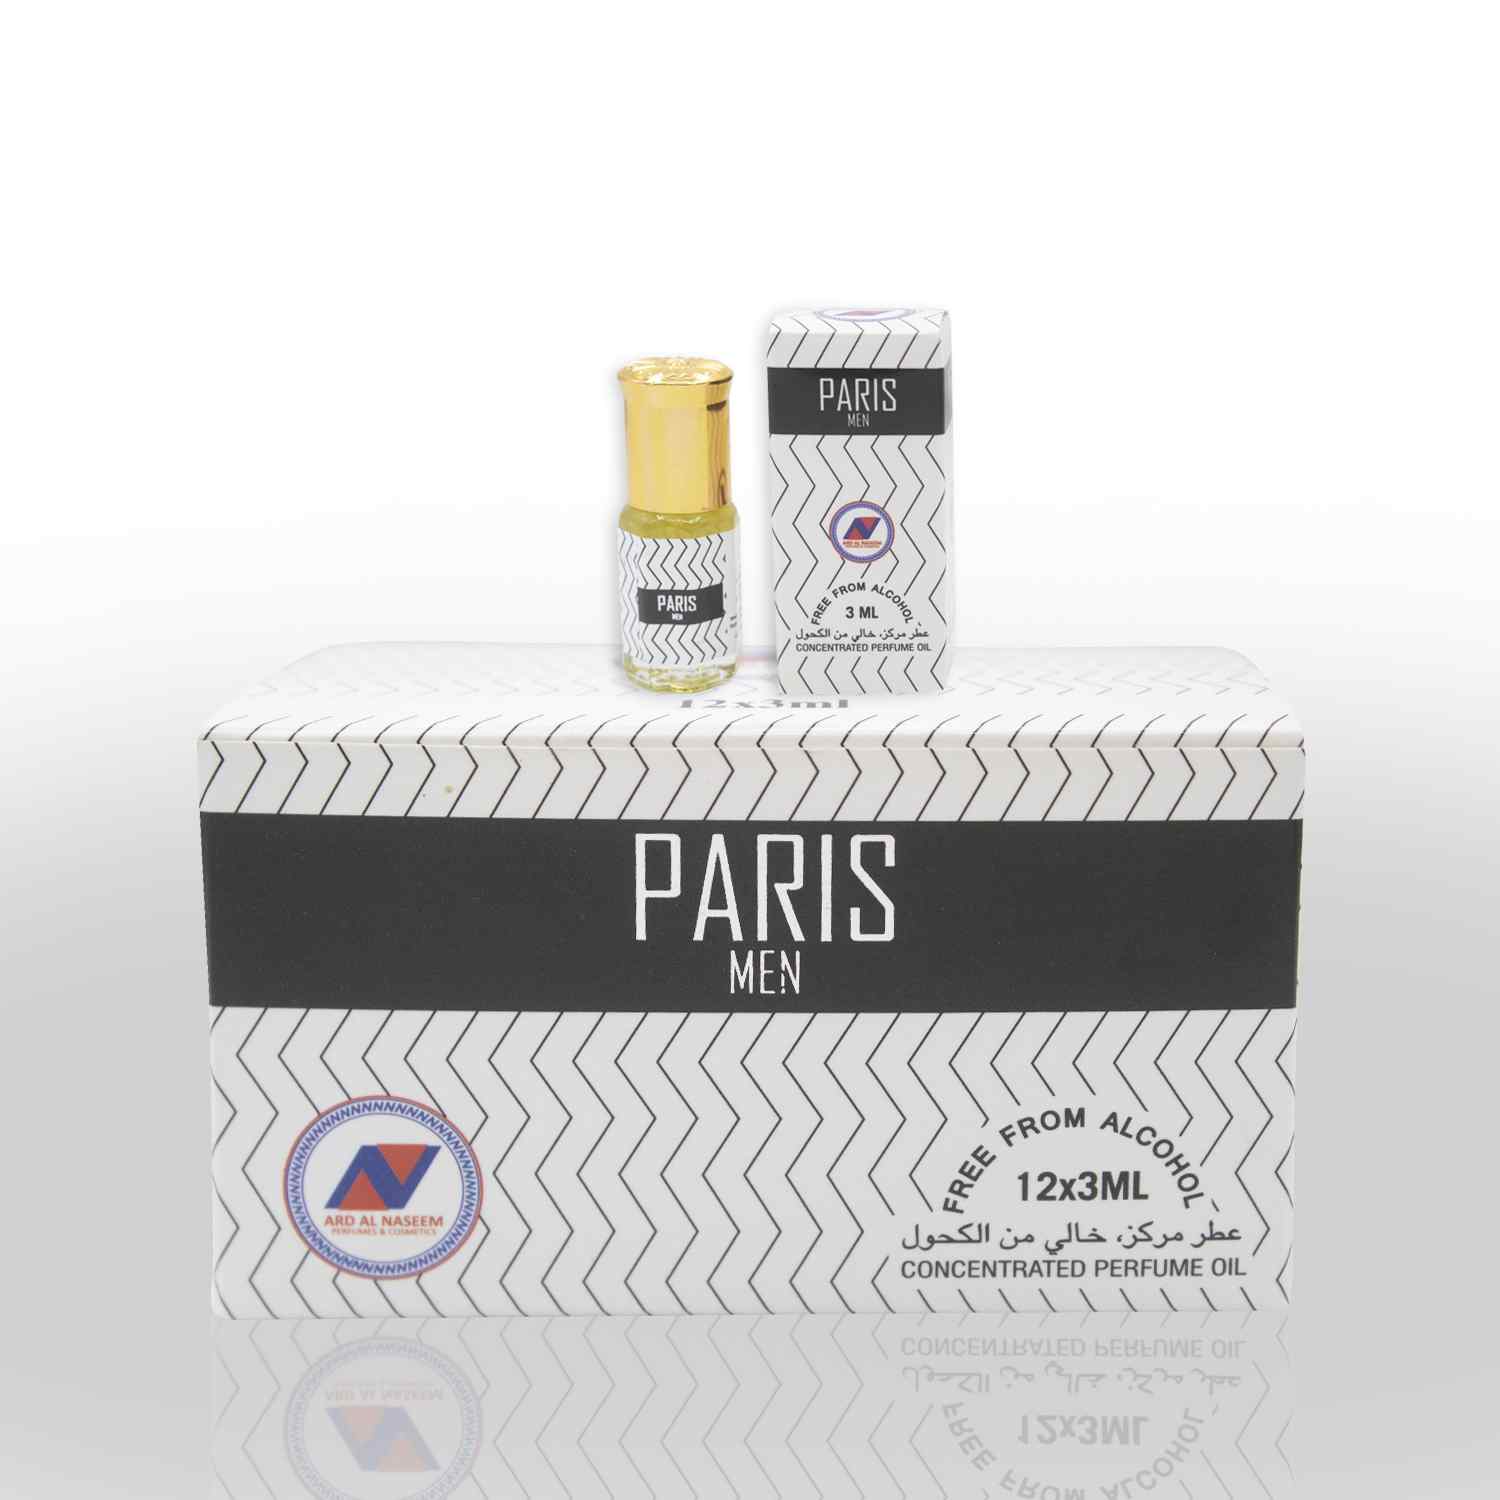 Paris-Men-3ml-Rollan-Attar-by-ARD-perfumes